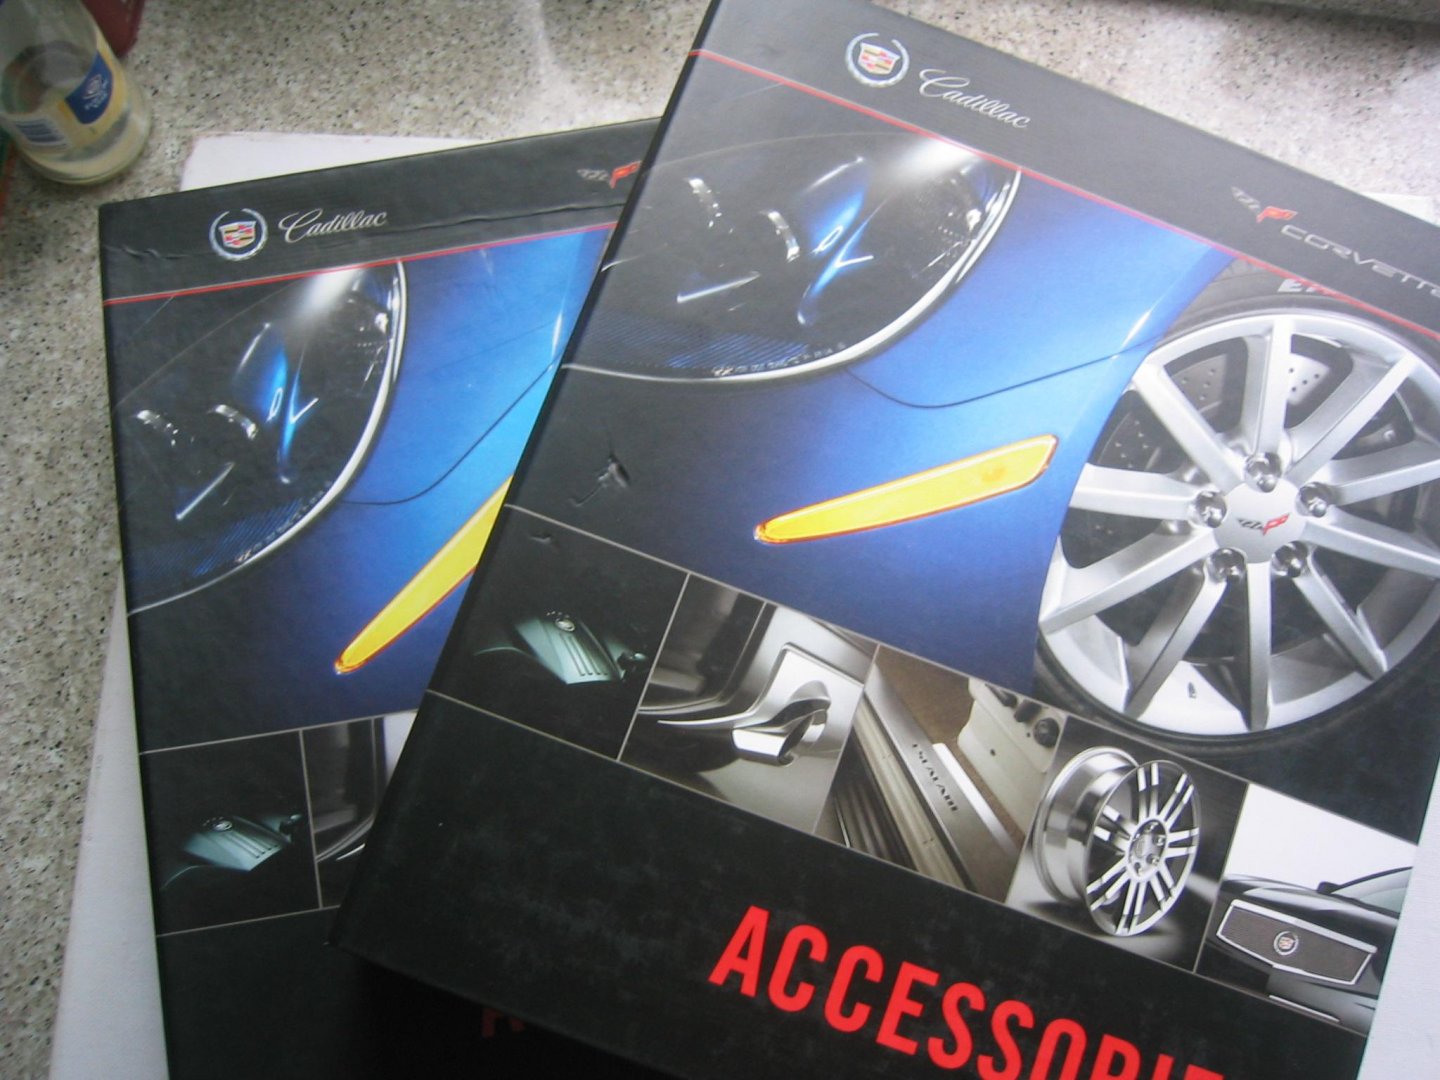 redactie - Chevrolet / Cadillac Corvette Accessories